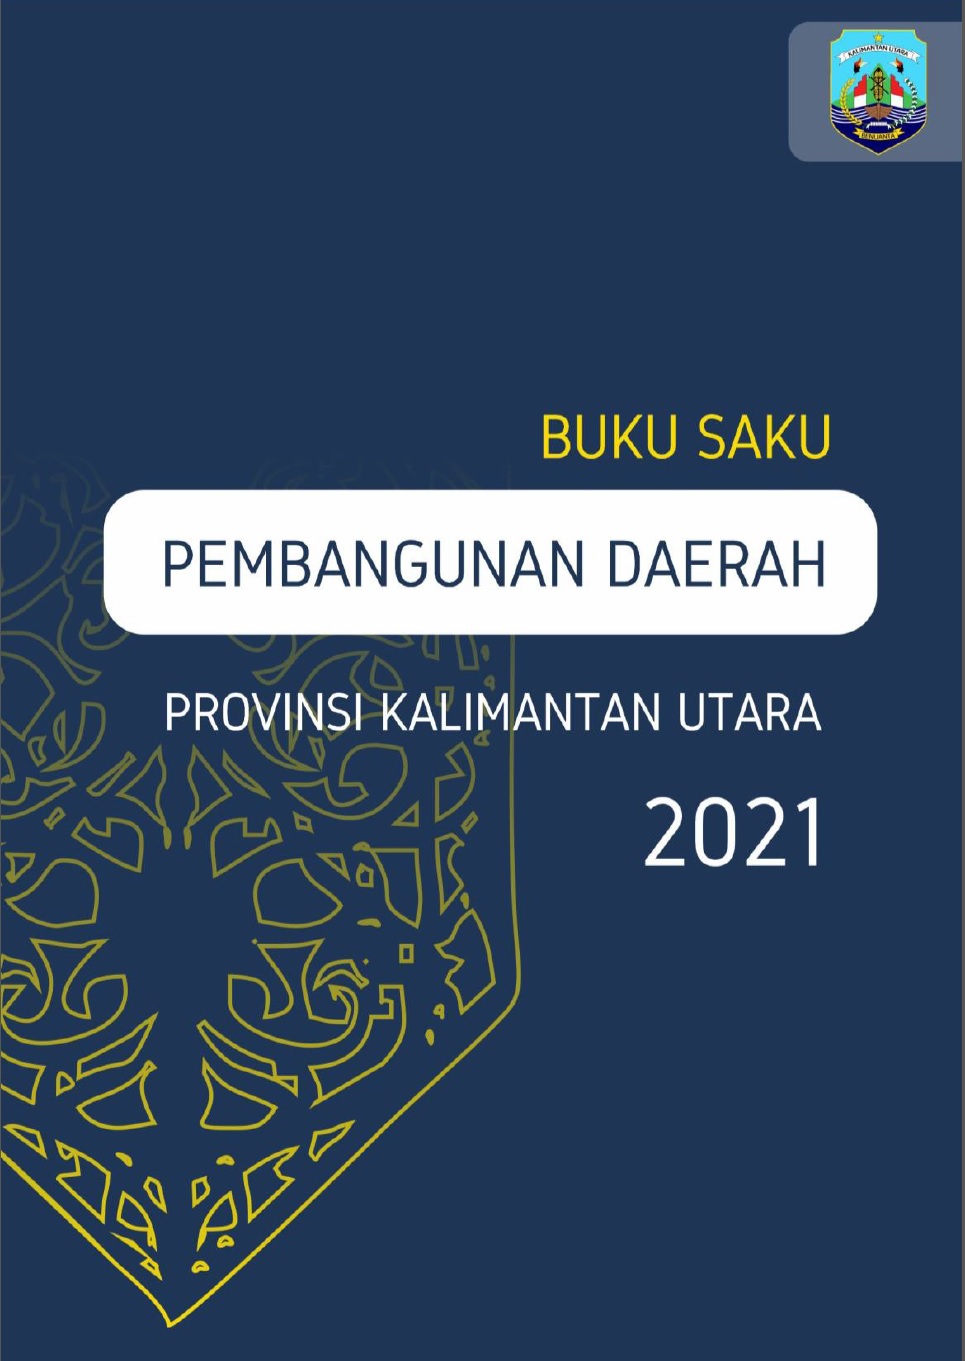 Buku Saku Pembangunan Daerah Provinsi Kalimantan Utara 2021